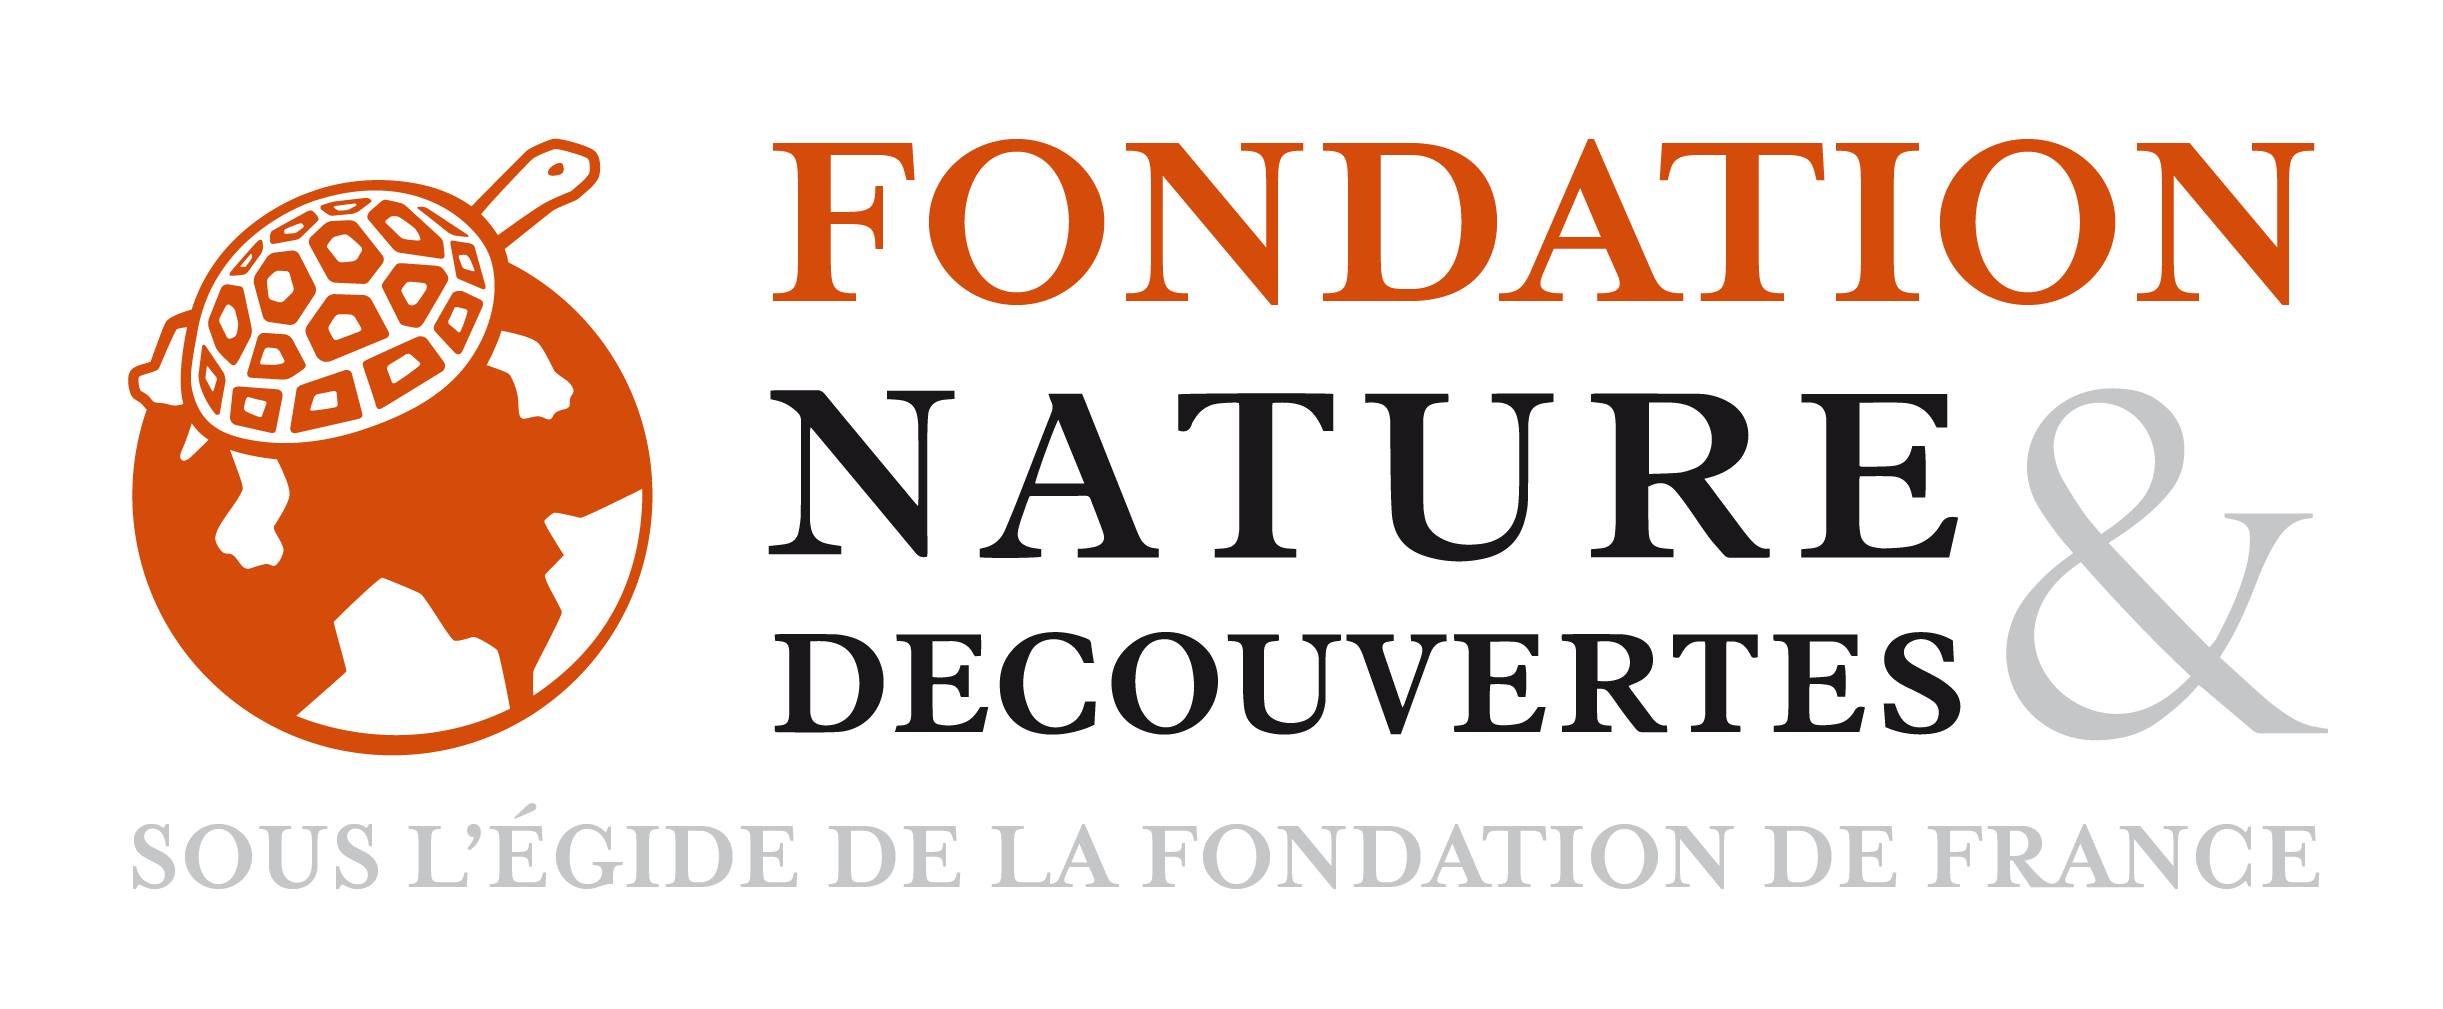 logo_fondation_netd_2018_rvb_Web